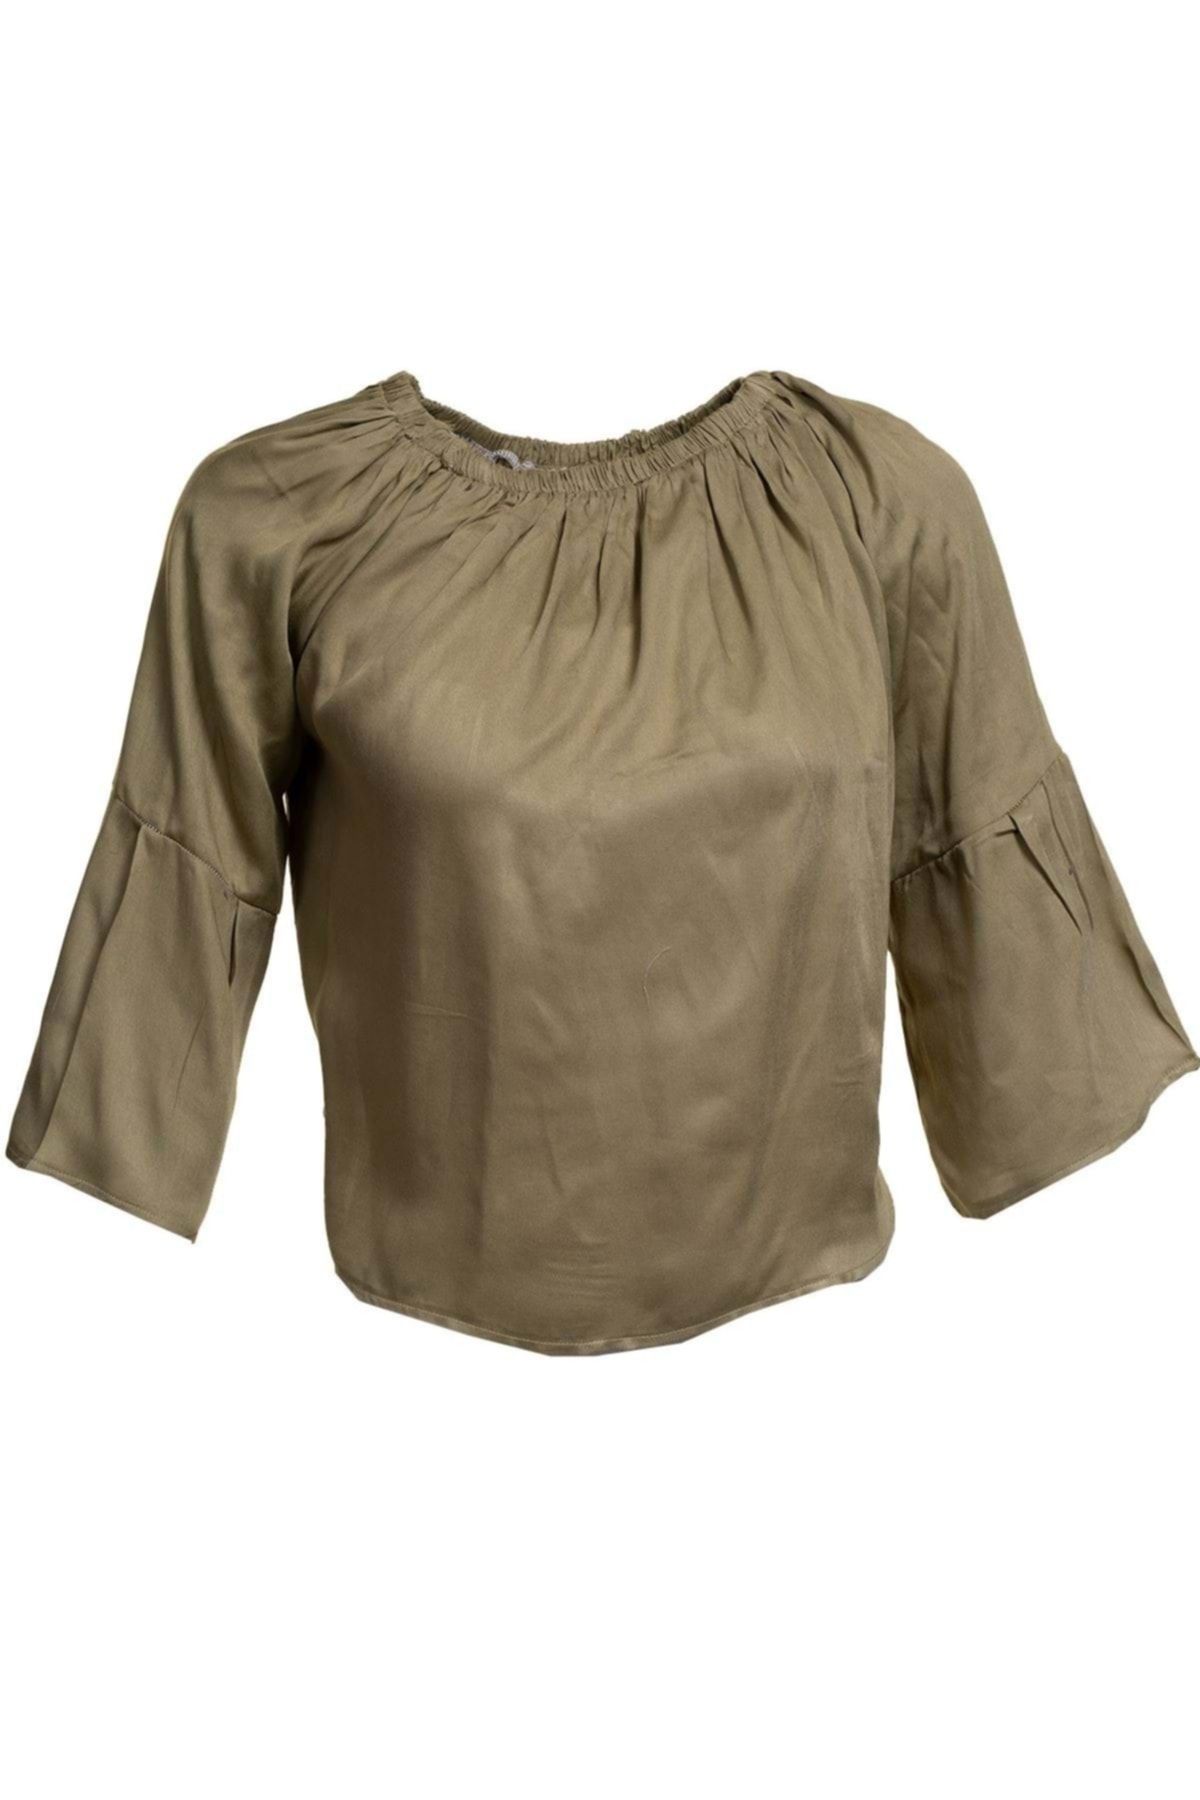 Exve Exclusive Haki Yeşili Basic Sade Kadın Omzu Açık Bluz